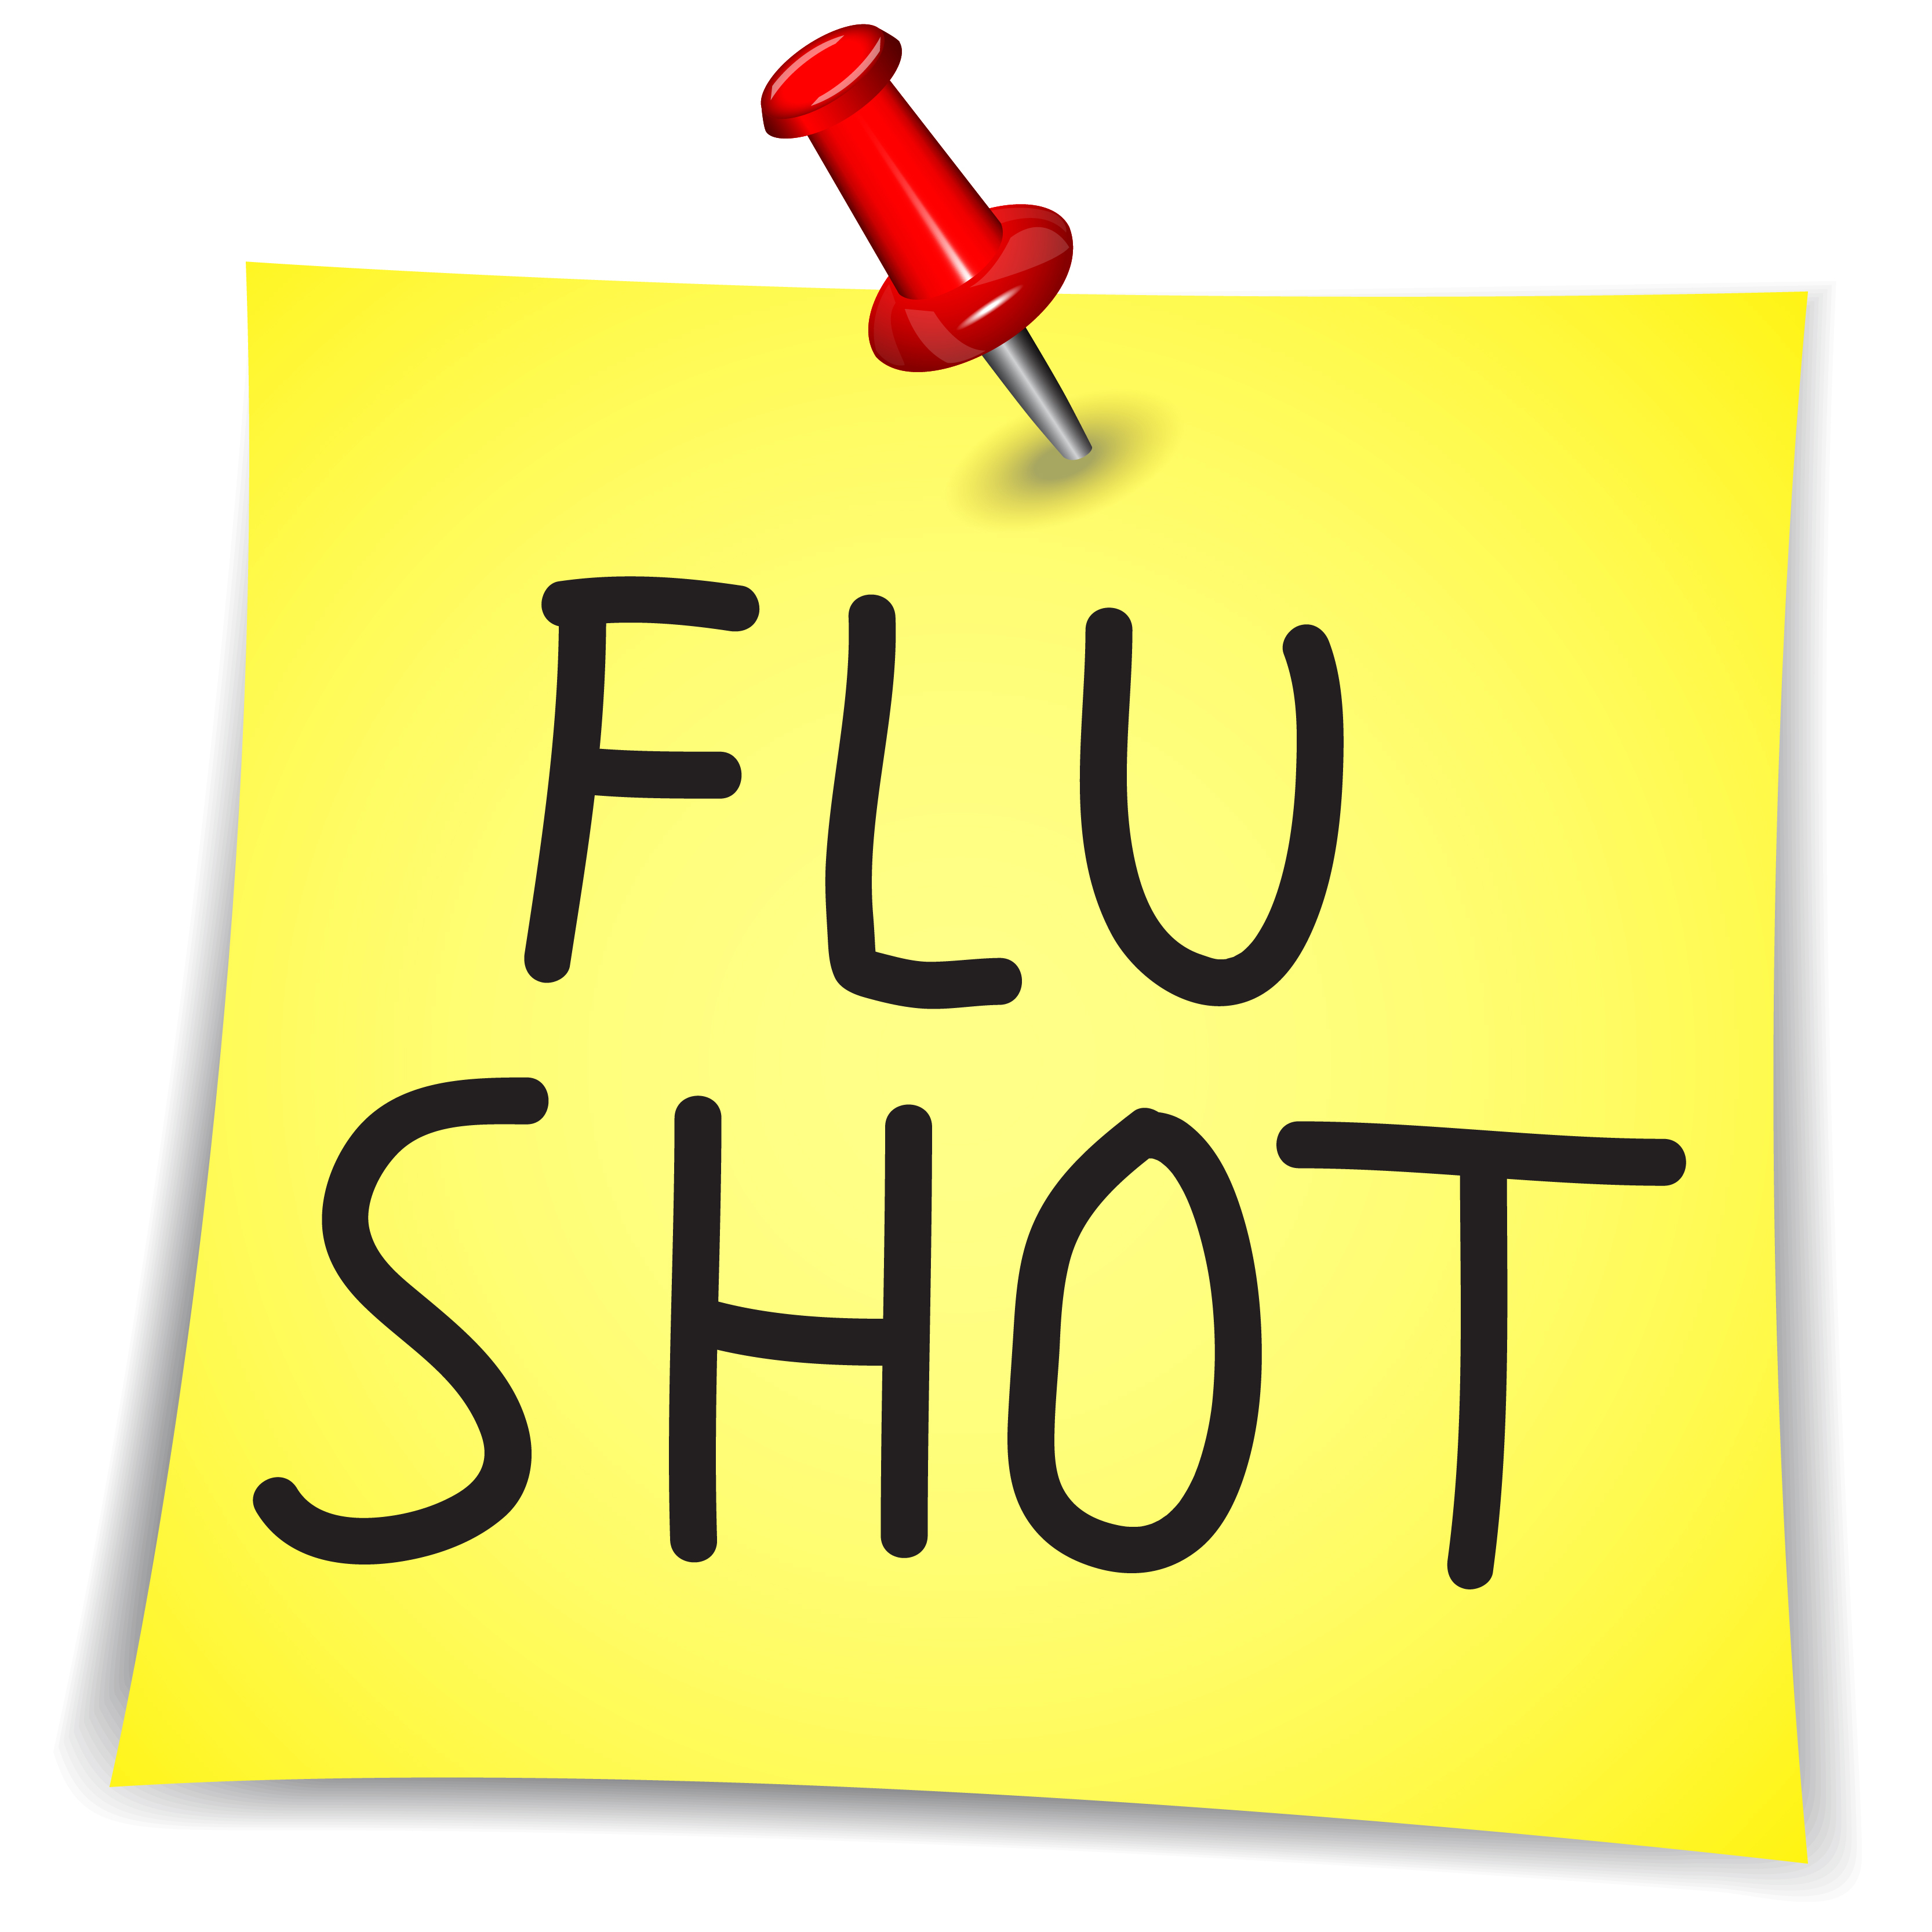 flu clipart flu clinic